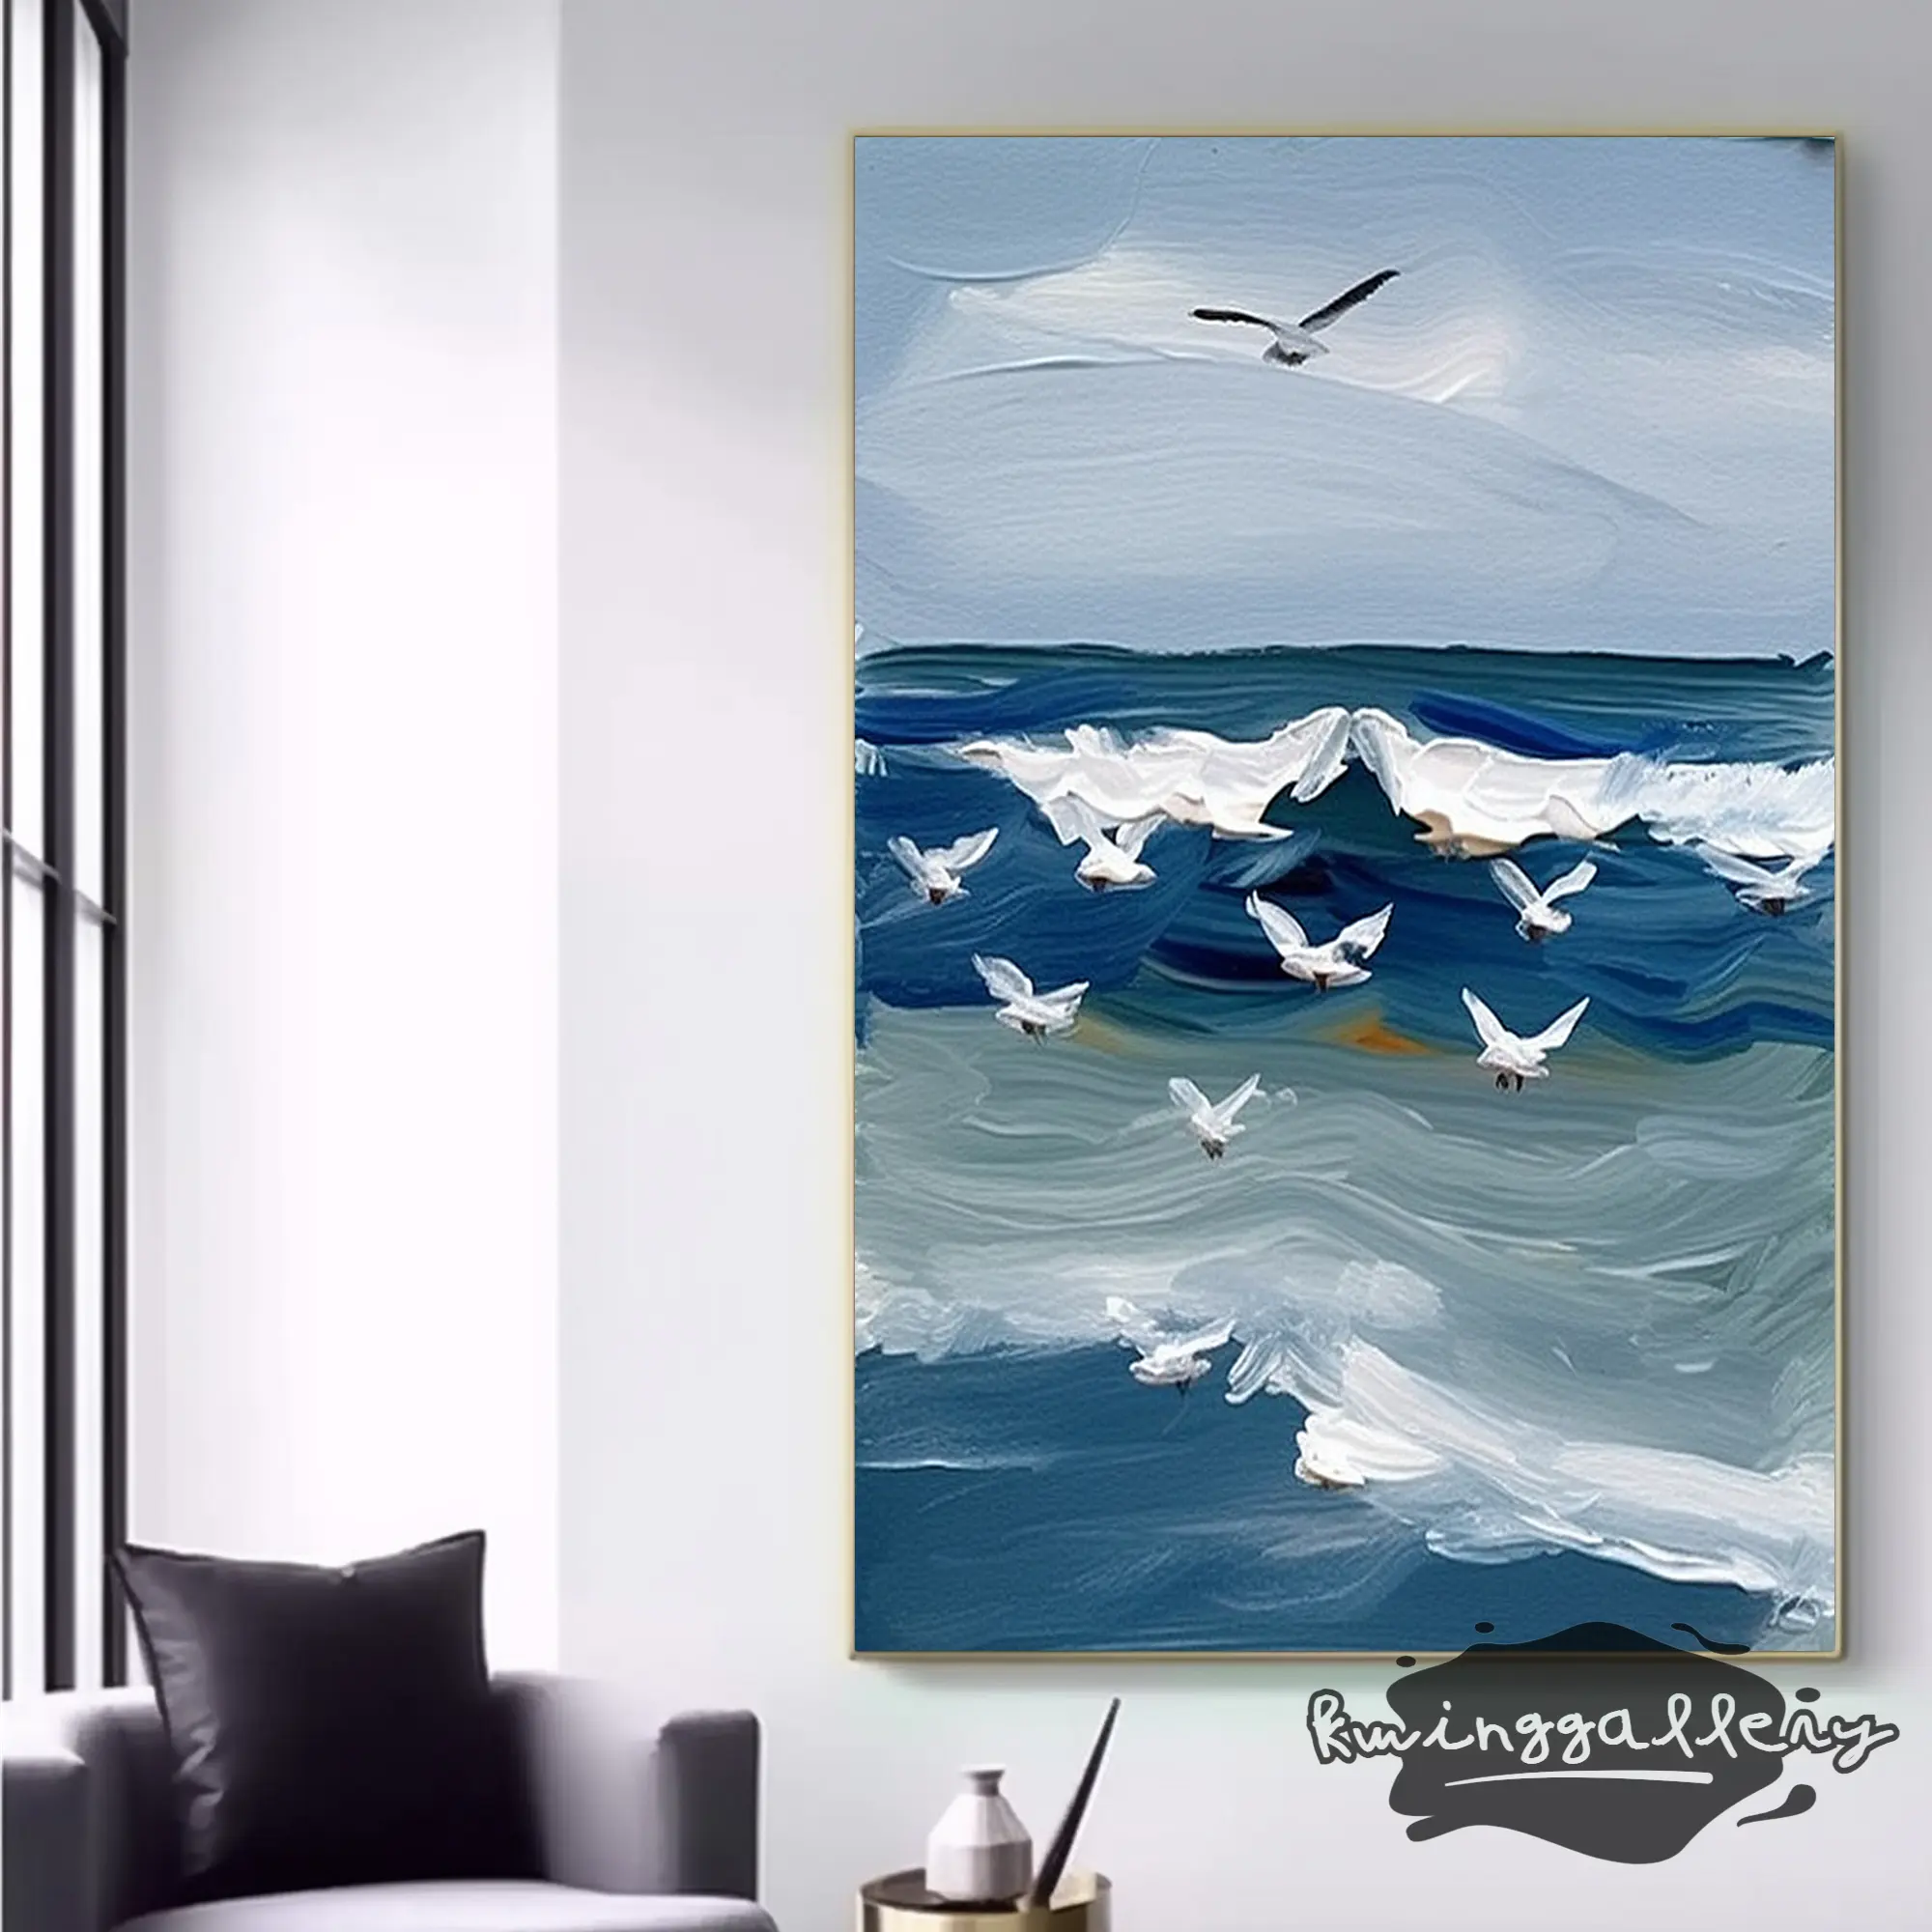 Trang trí bãi biển, trang trí tường phòng khách nghệ thuật tranh vải sóng biển nguyên bản, Tranh phong cảnh bãi biển trừu tượng